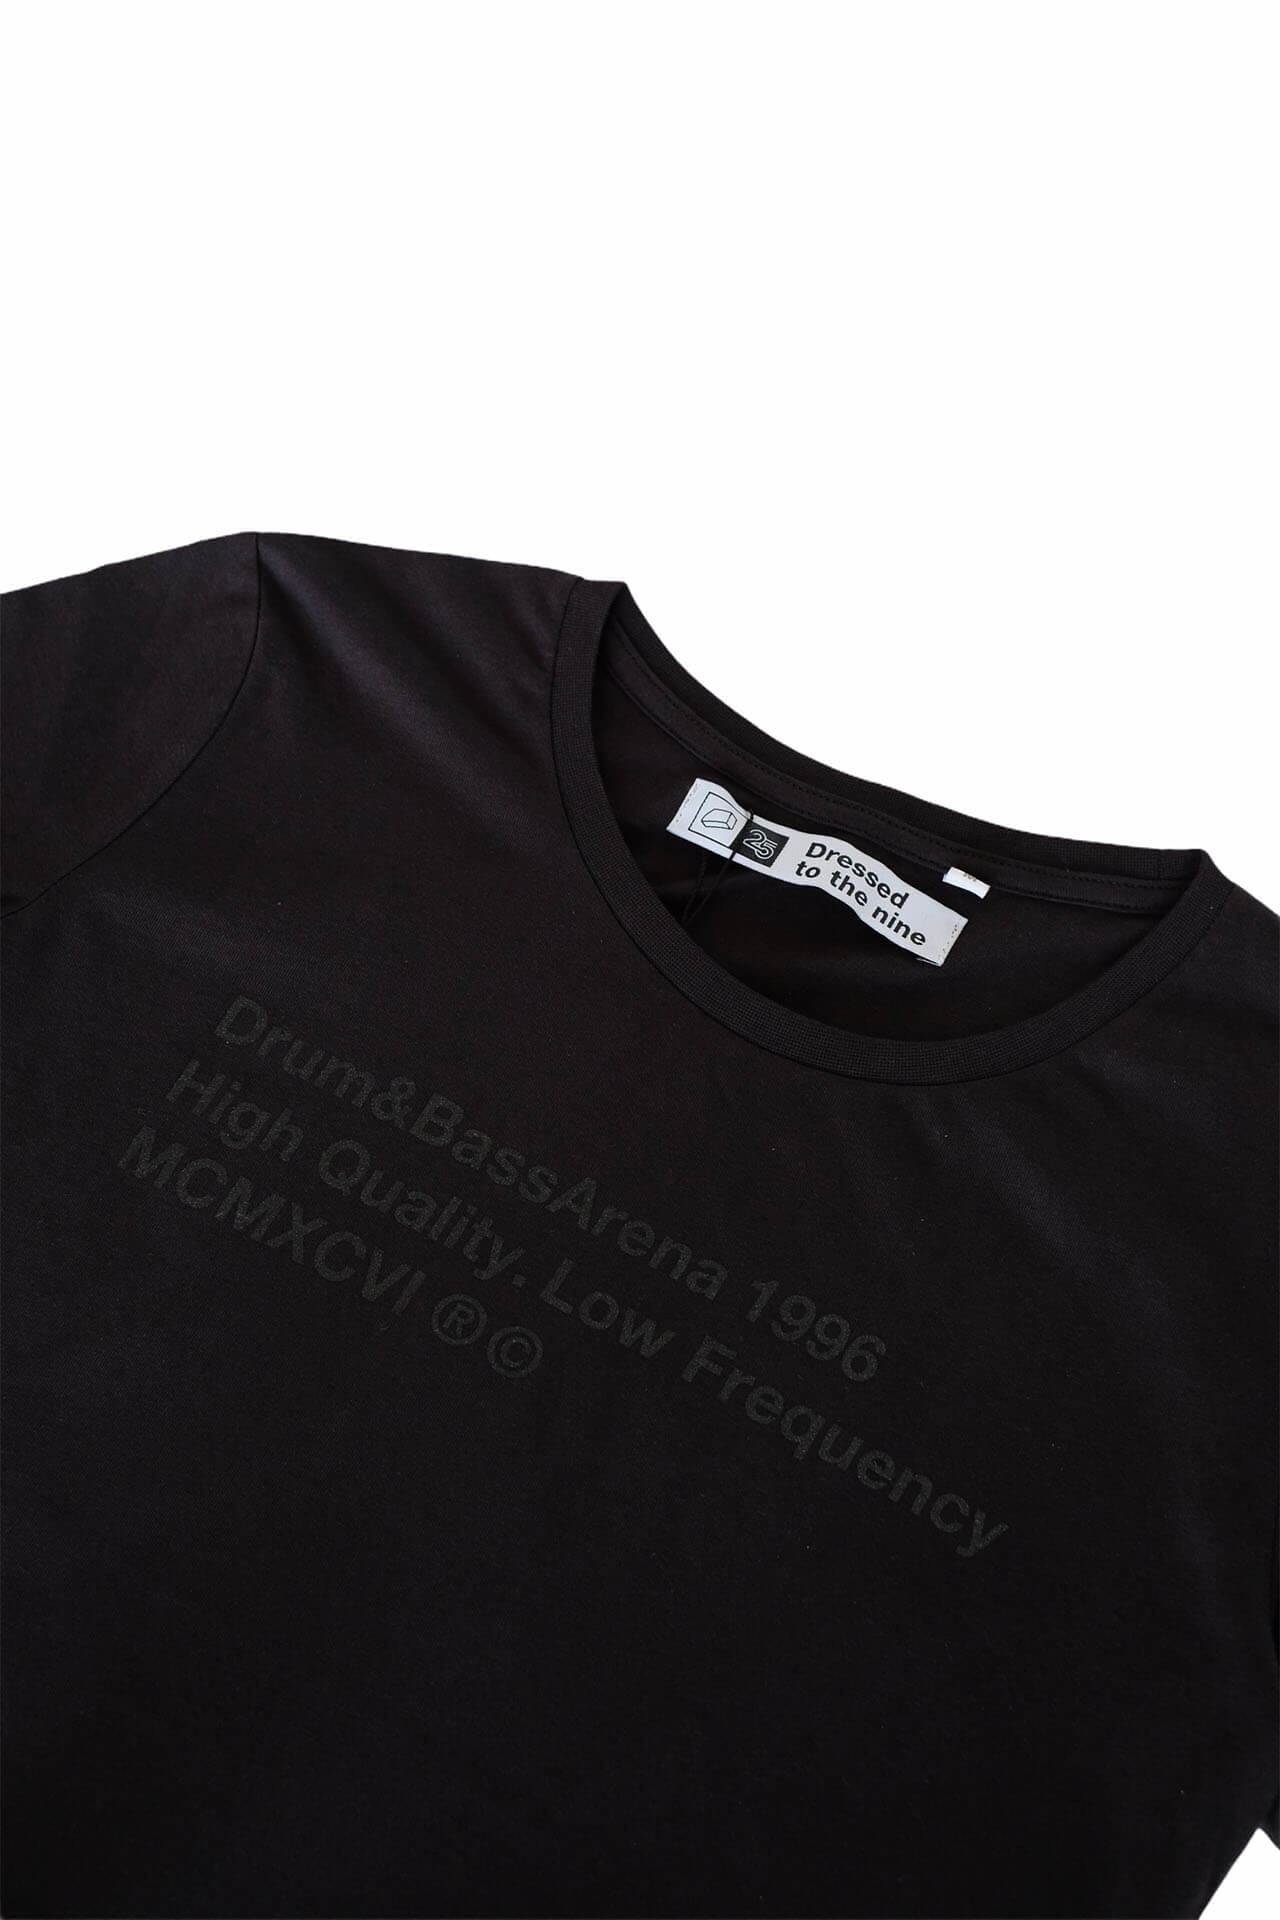 Edición limitada de la camiseta Stealth 25 Years (Mujer)